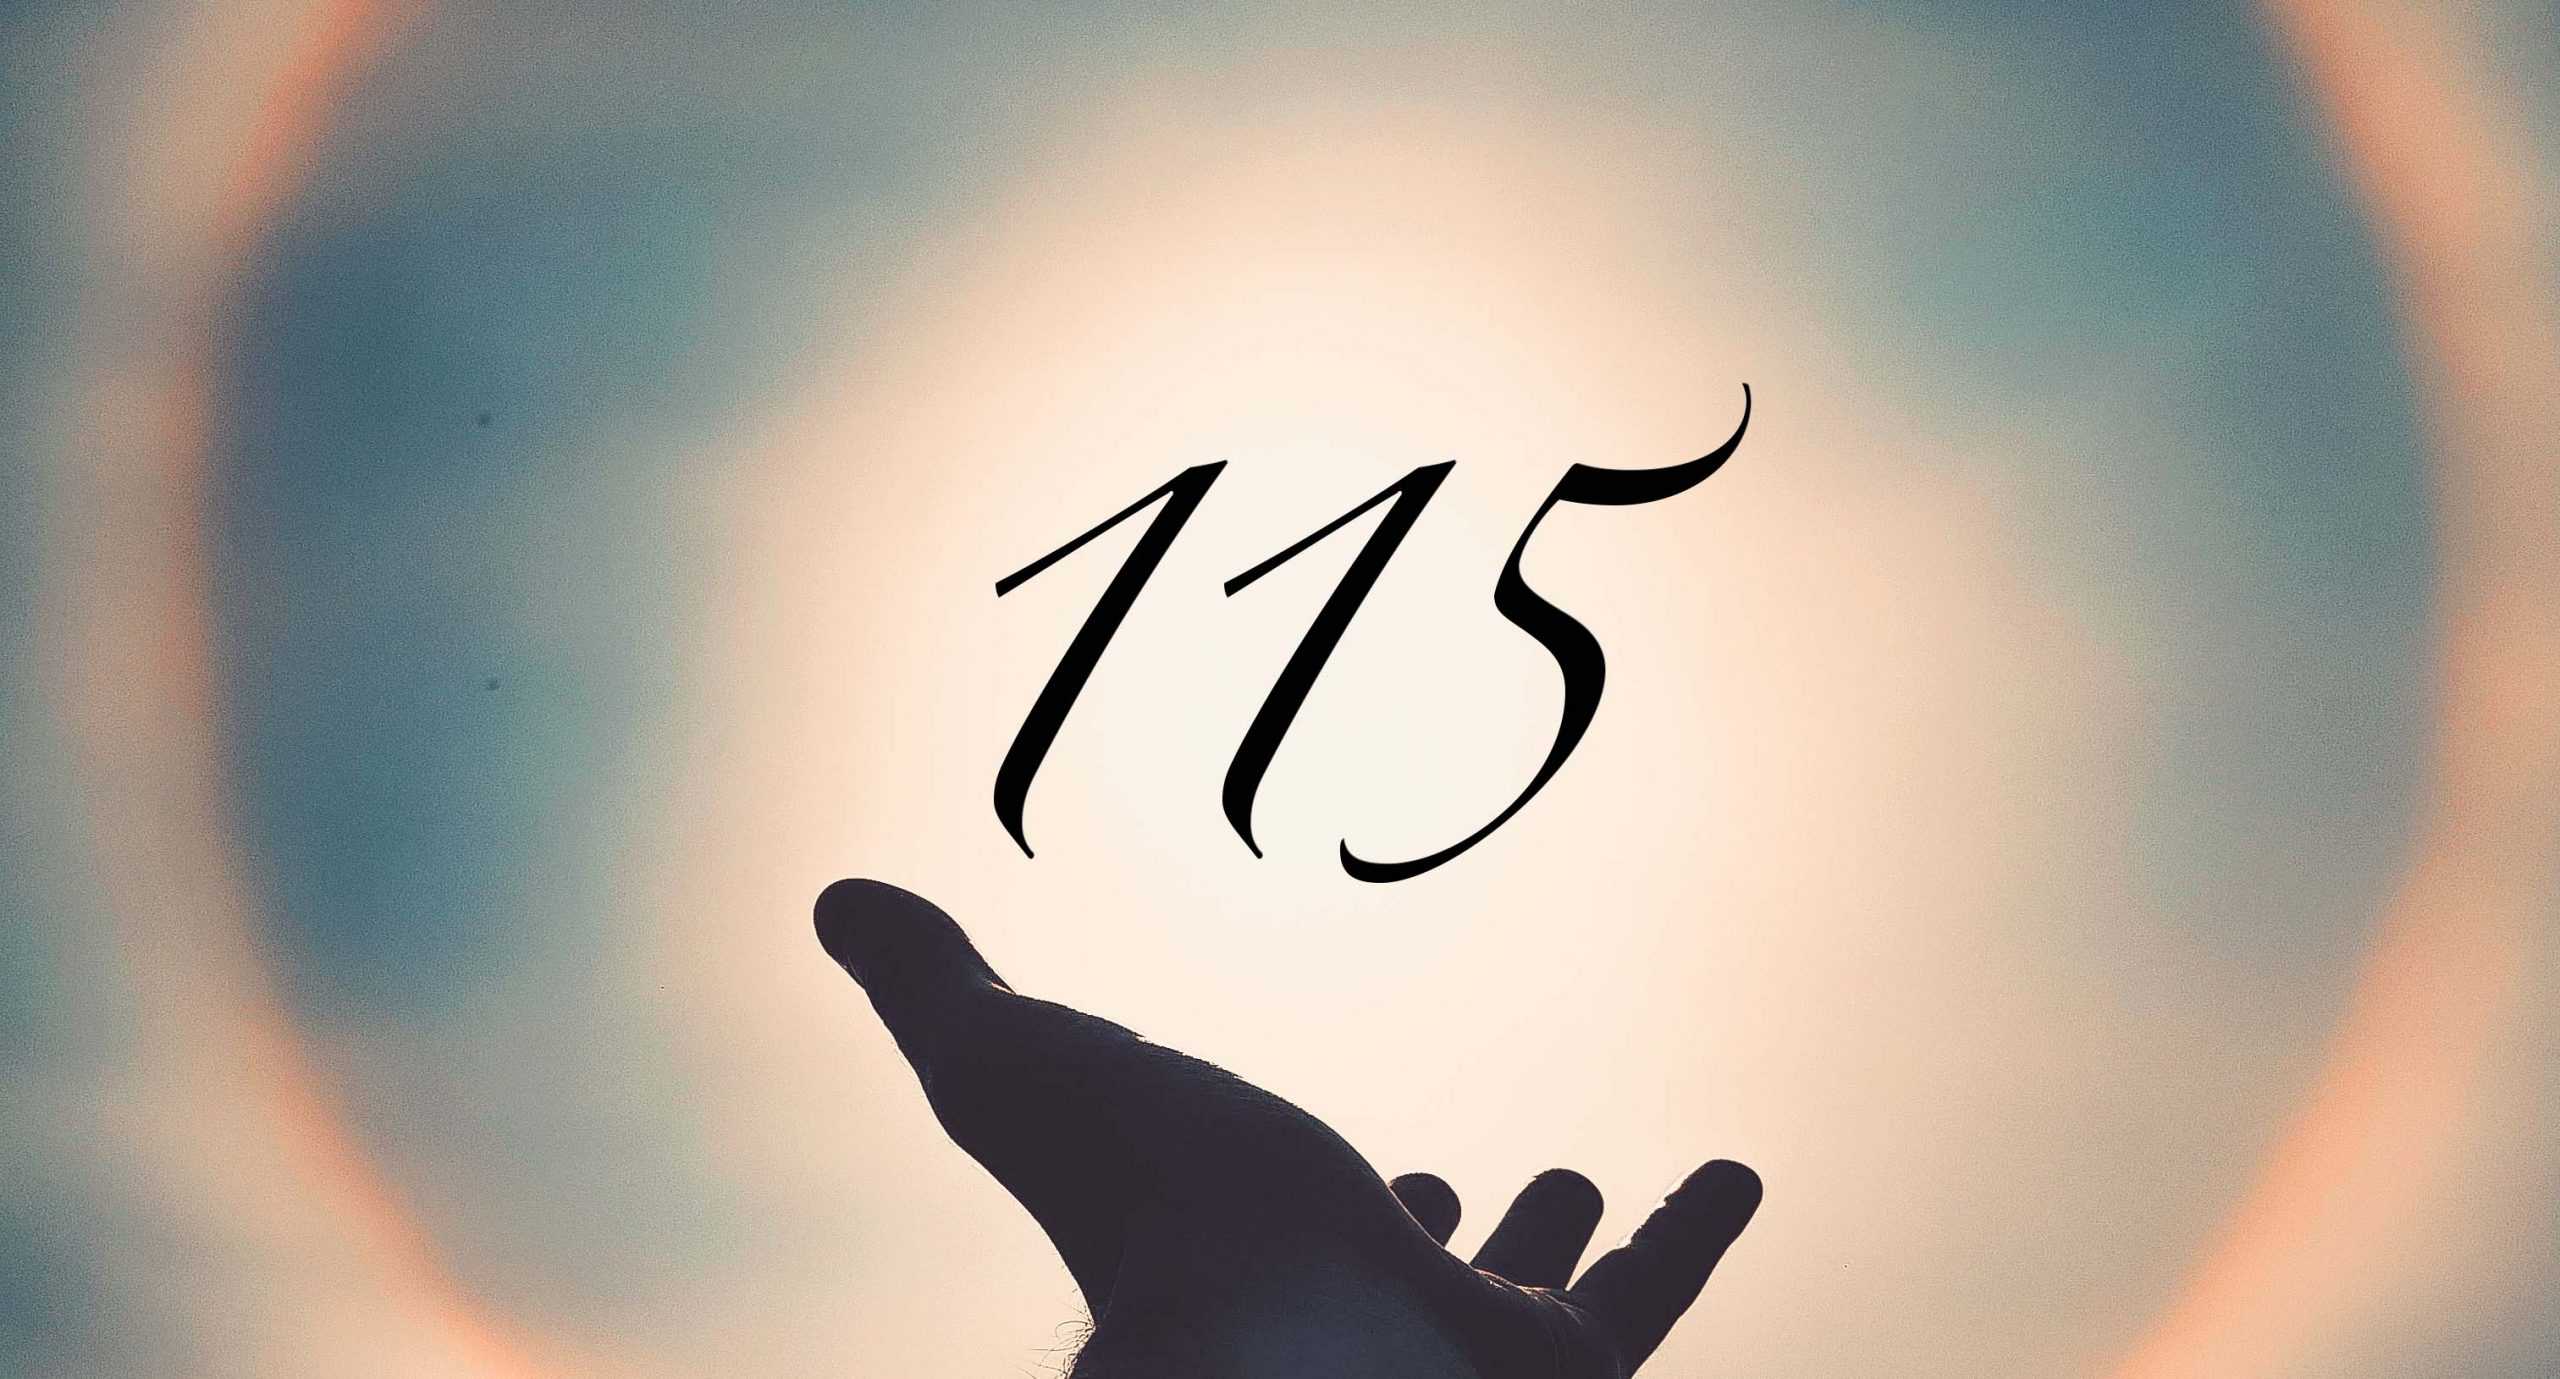 Signification du nombre 115